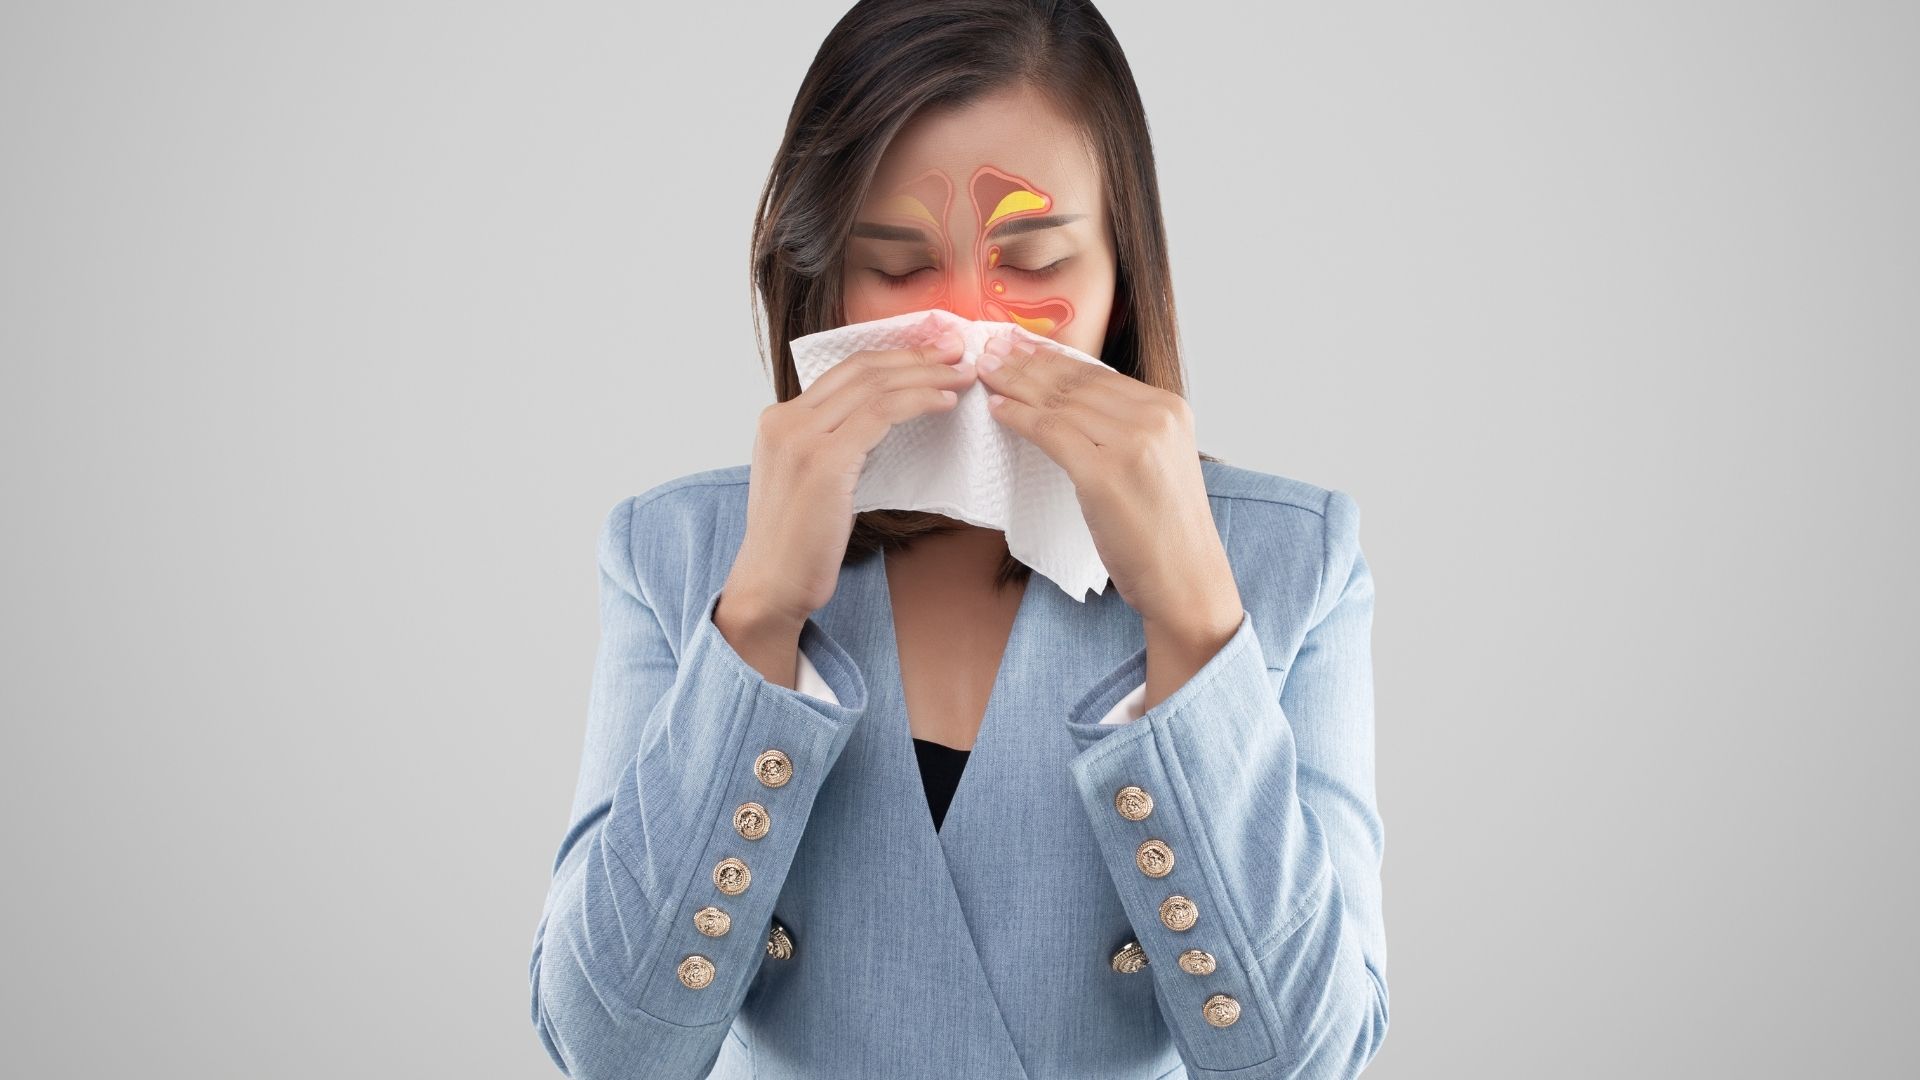 Синусит - воспаление придаточных пазух носа. Симптомы, лечение, профилактика.